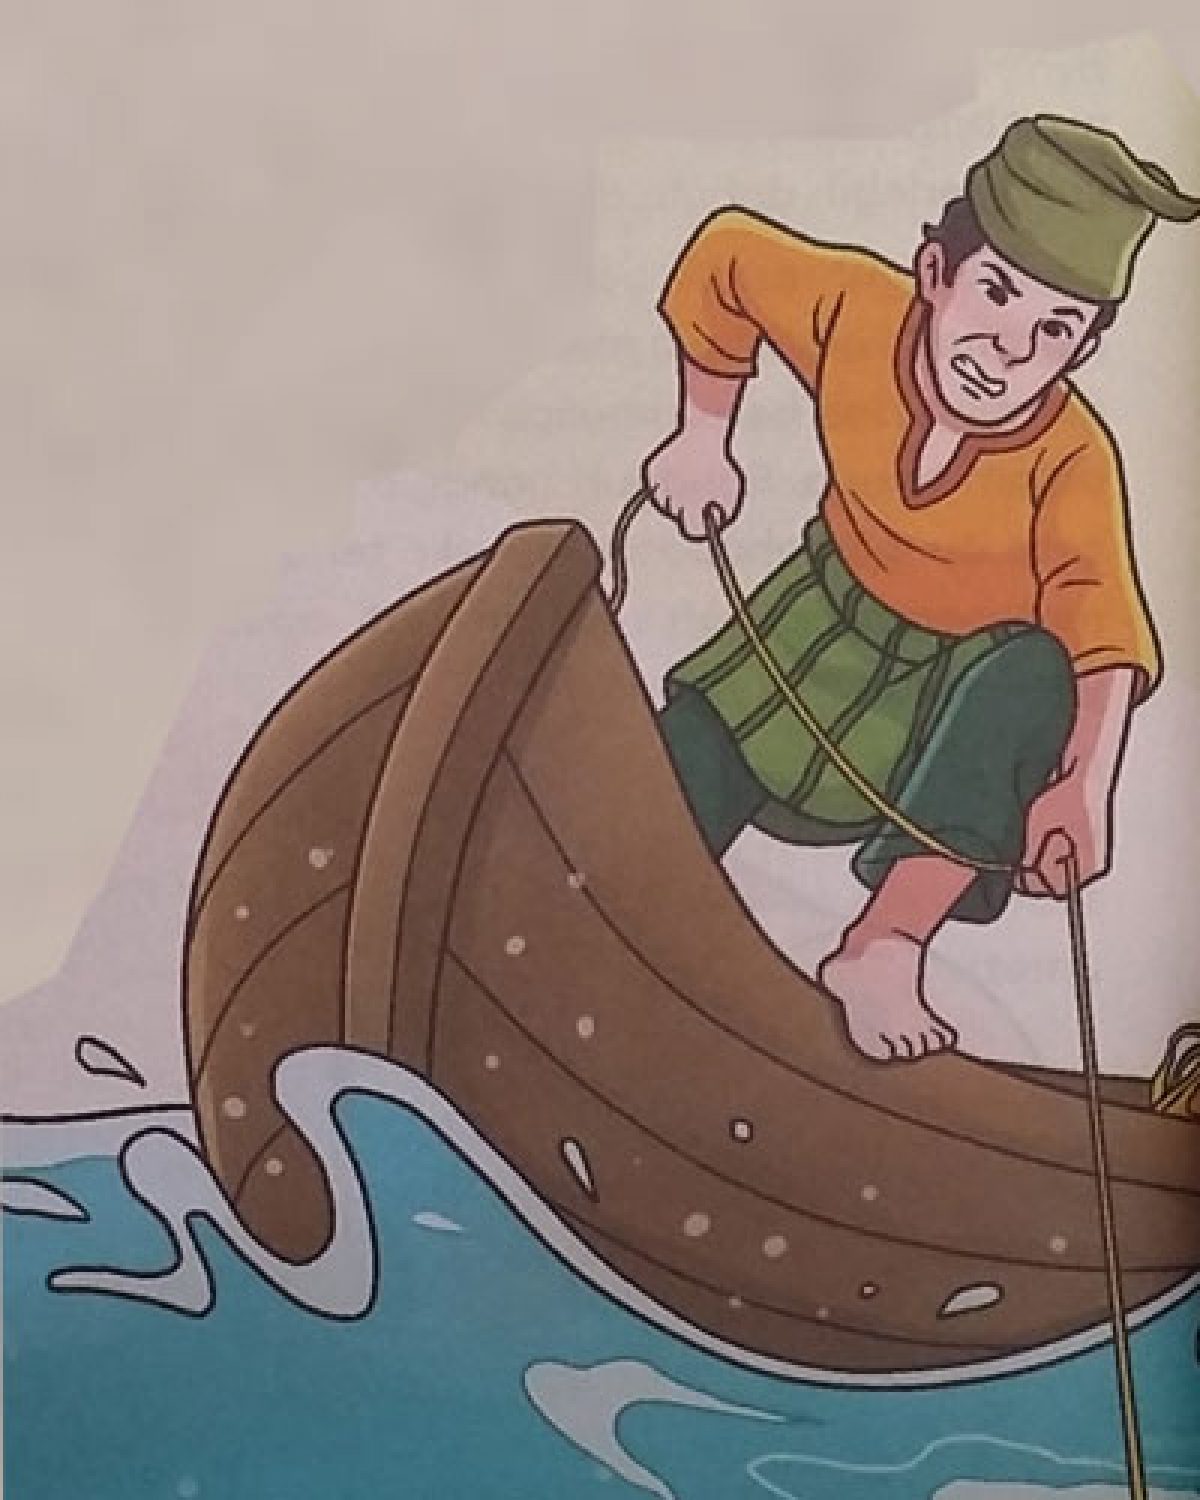 Cerita Legenda Di Indonesia Asal Muasal Sungai Kawat